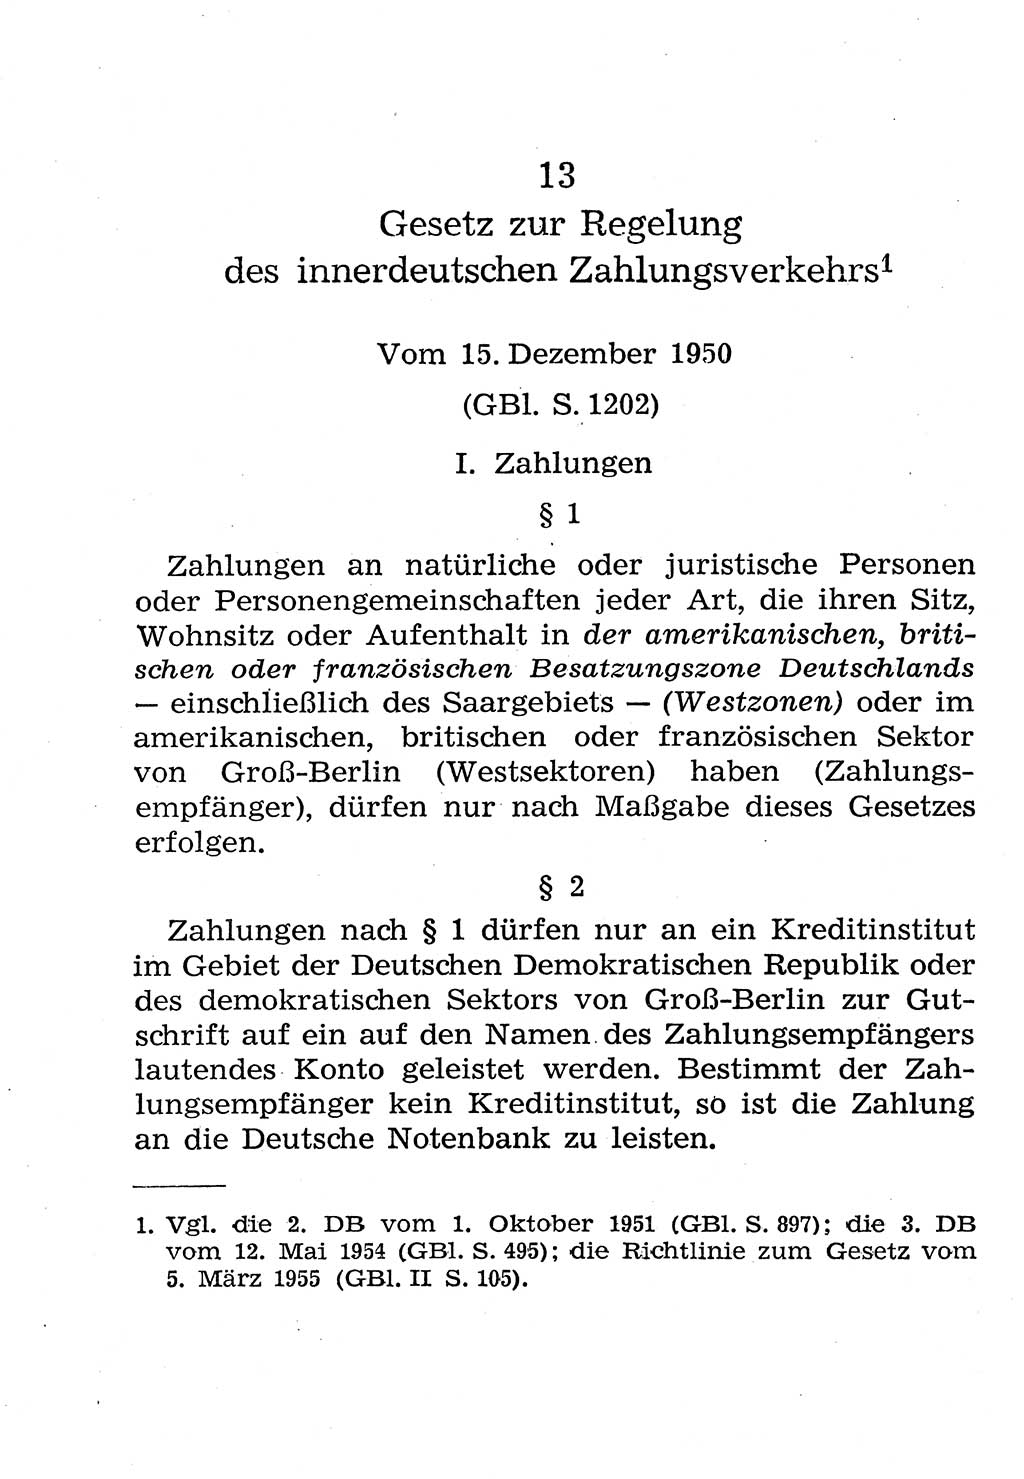 Strafgesetzbuch (StGB) und andere Strafgesetze [Deutsche Demokratische Republik (DDR)] 1958, Seite 290 (StGB Strafges. DDR 1958, S. 290)